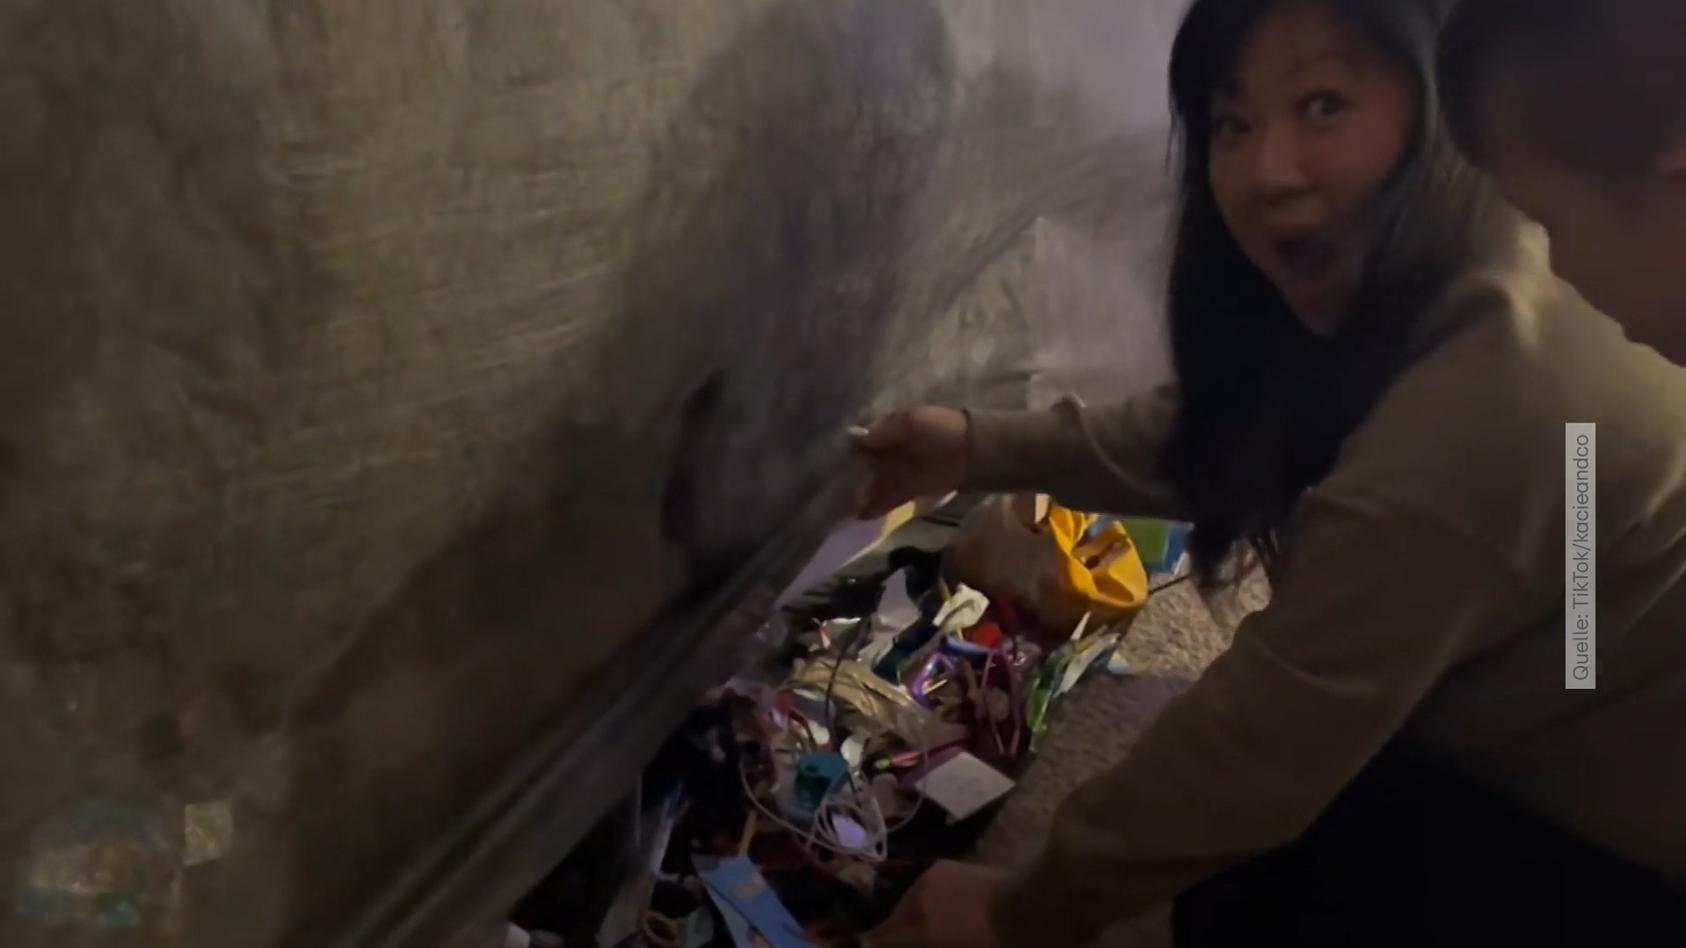 Angesammelt über mehrere Jahre - Mutter findet Müllhalde in Sofaritze